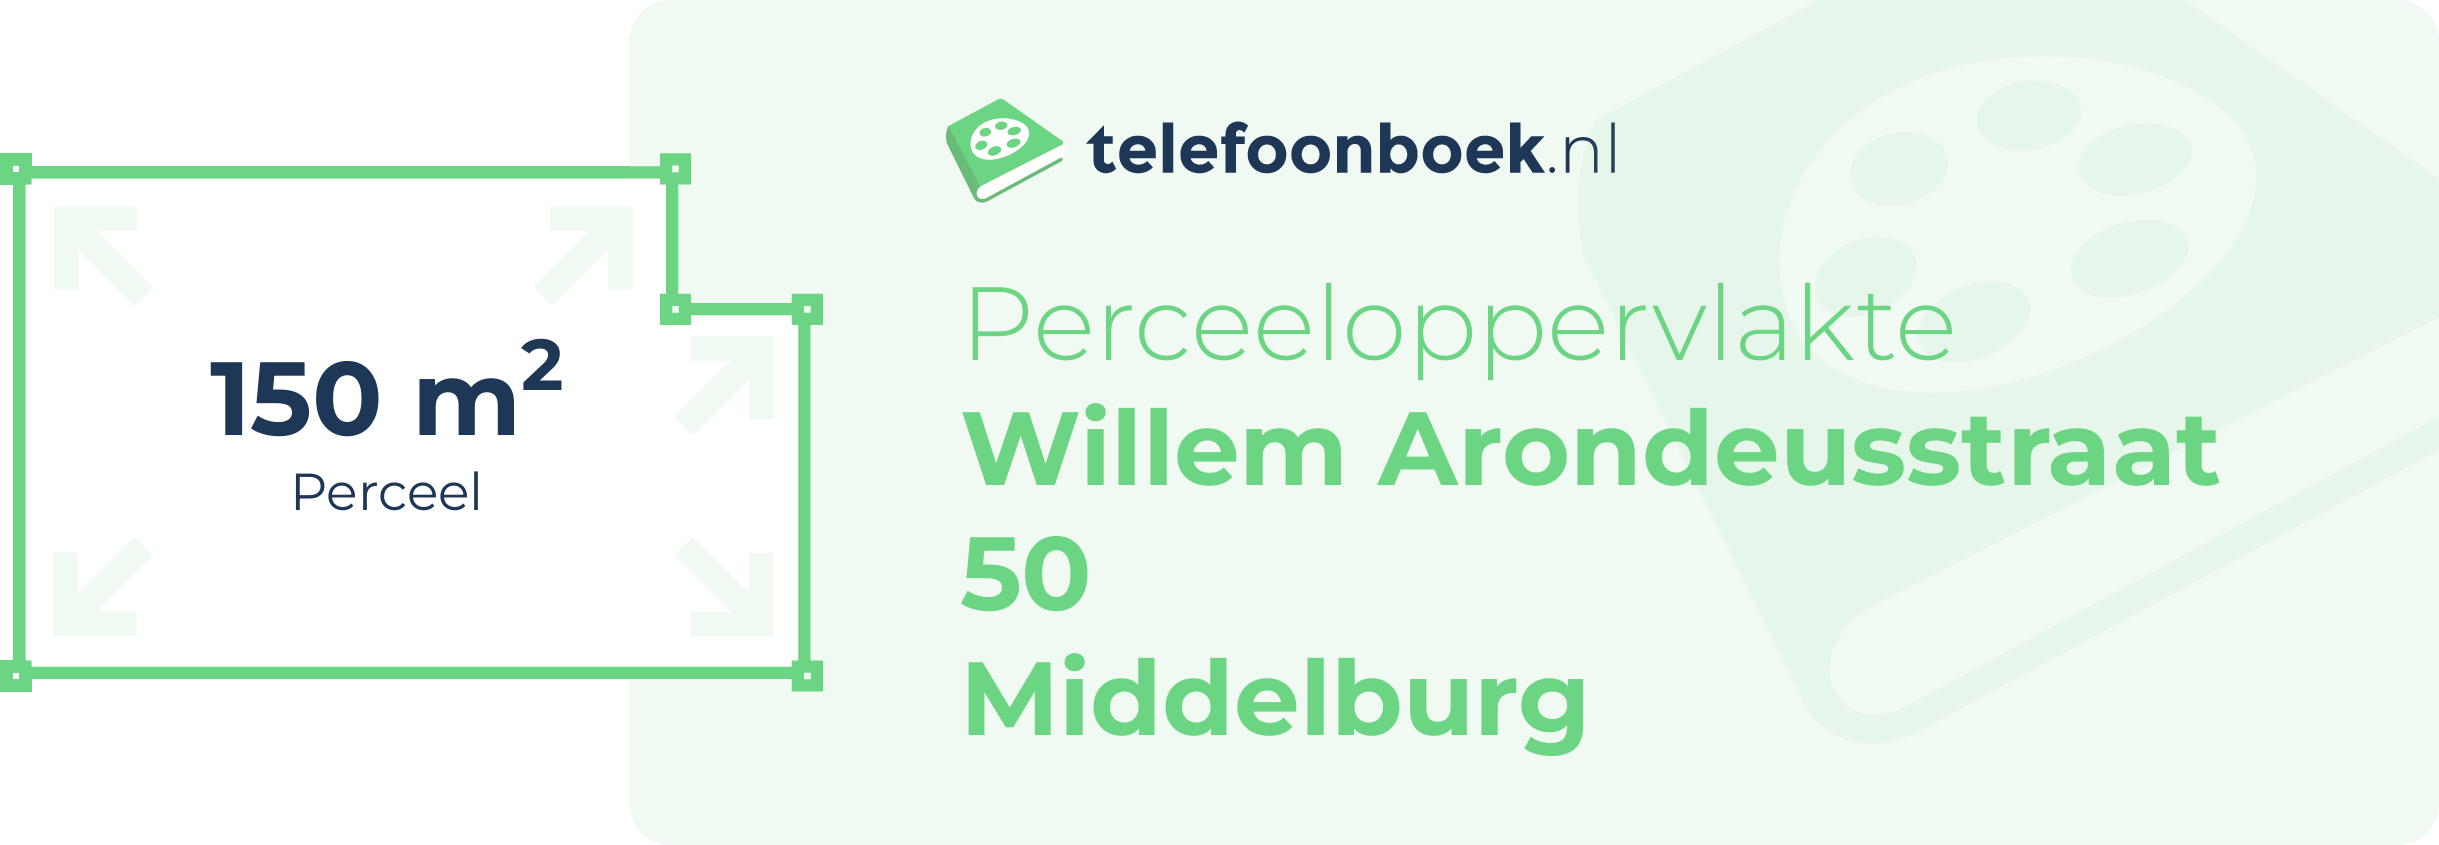 Perceeloppervlakte Willem Arondeusstraat 50 Middelburg